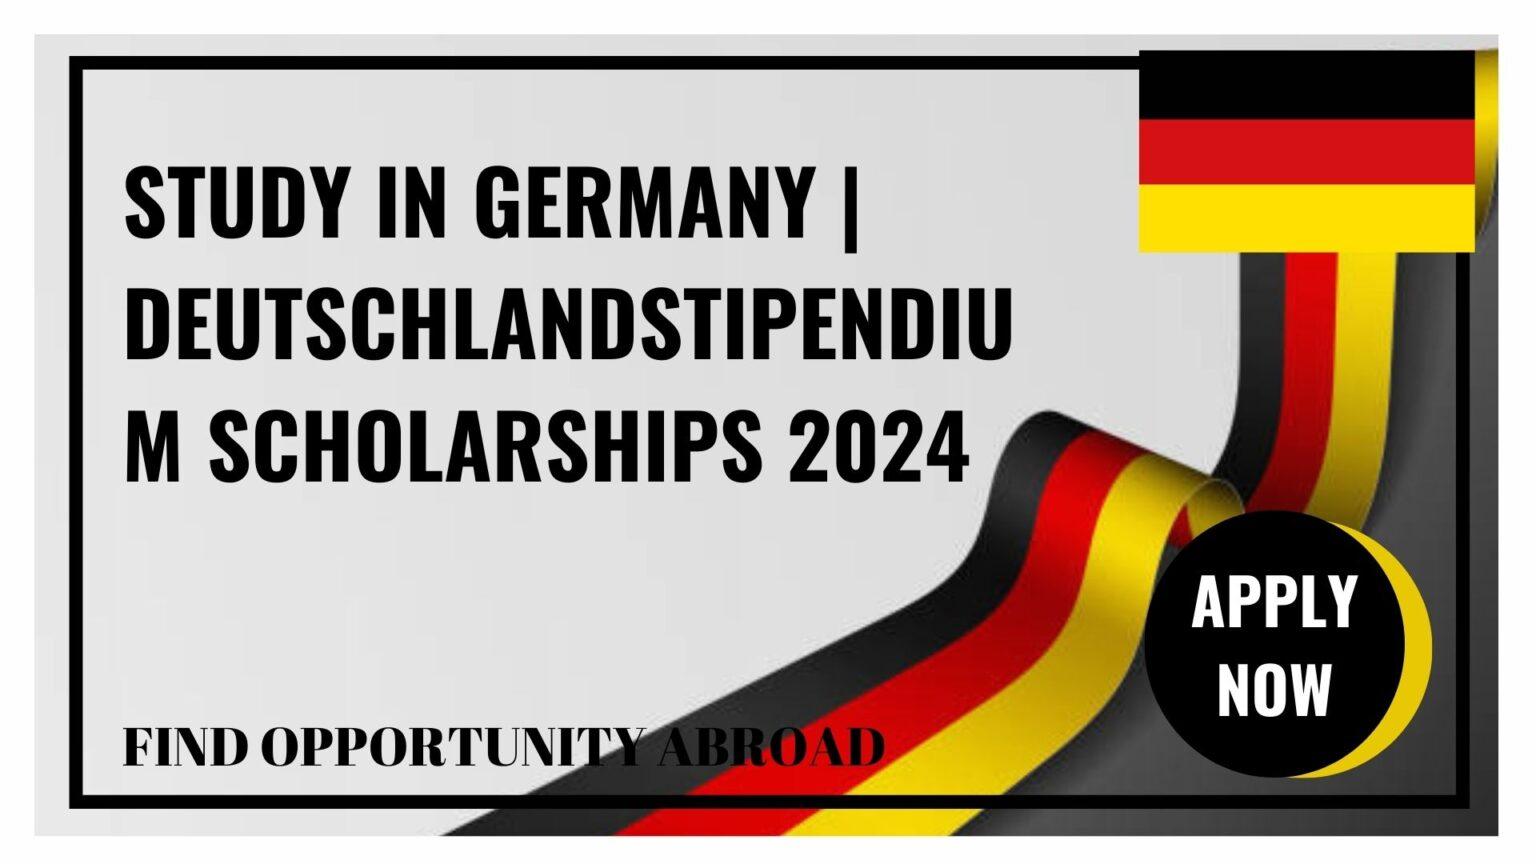 Study in Germany Deutschlandstipendium Scholarships 2024